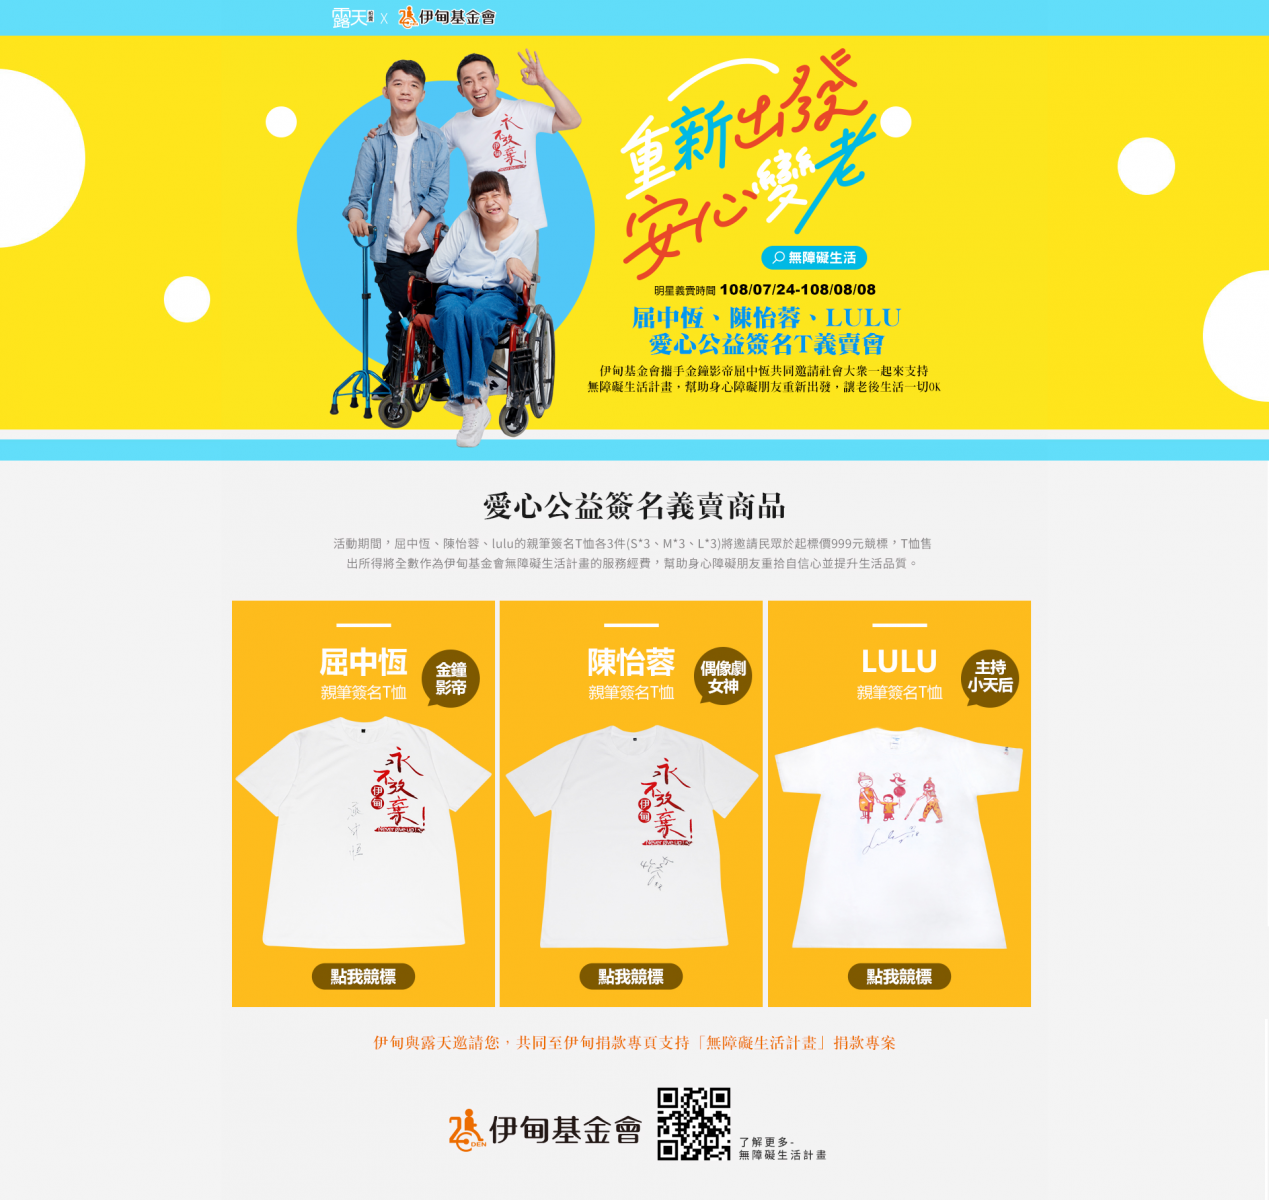 露天明星签名T恤公益竞标义卖活动即日起至8月8日止。